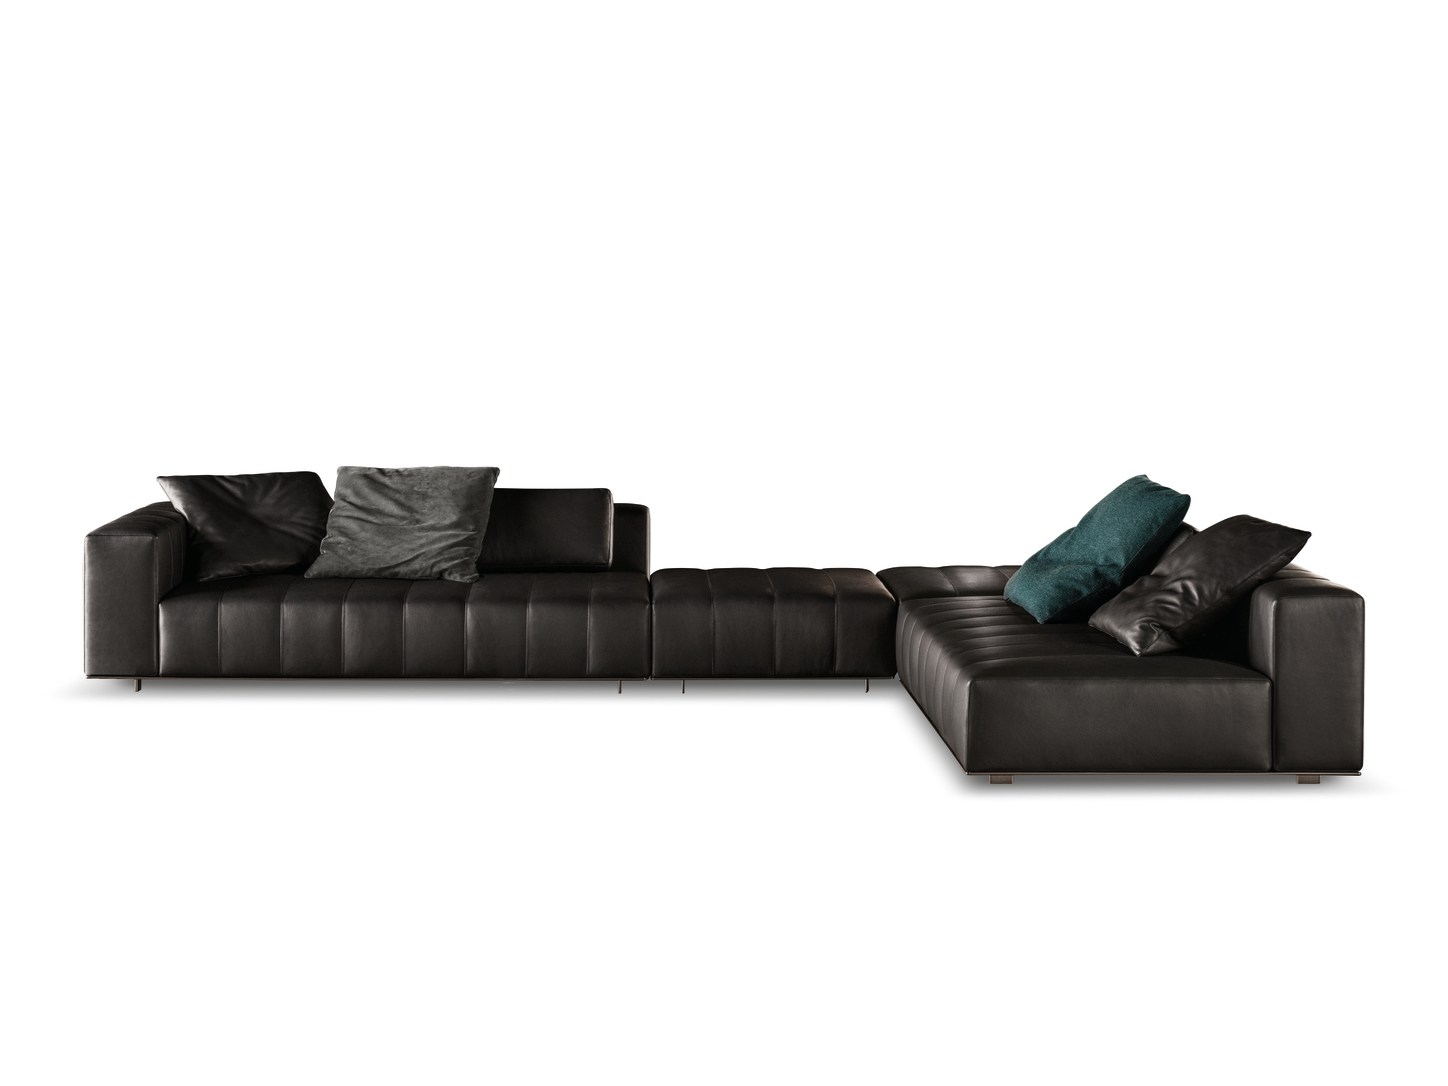 Freeman Modular Sofa by Rodolfo Dordoni for Minotti